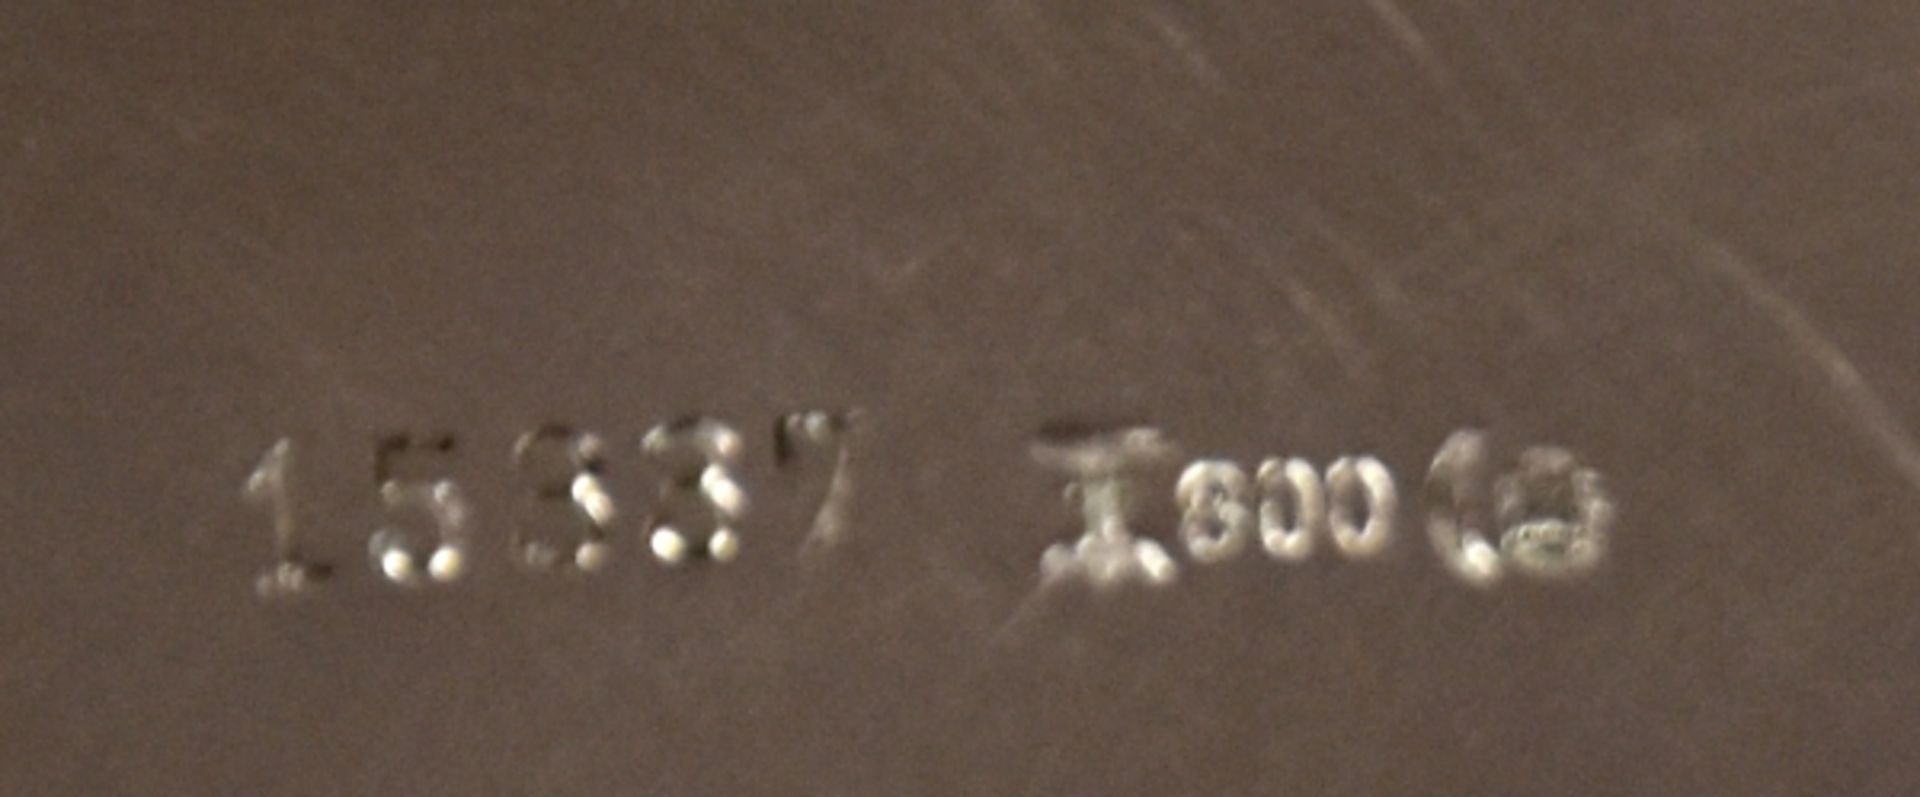 ZWEI SCHALEN eine rund mit geschwungenen Rändern, Silber 800, Koch u. Bergfeld, No. 15337, 1888/ - Bild 2 aus 2